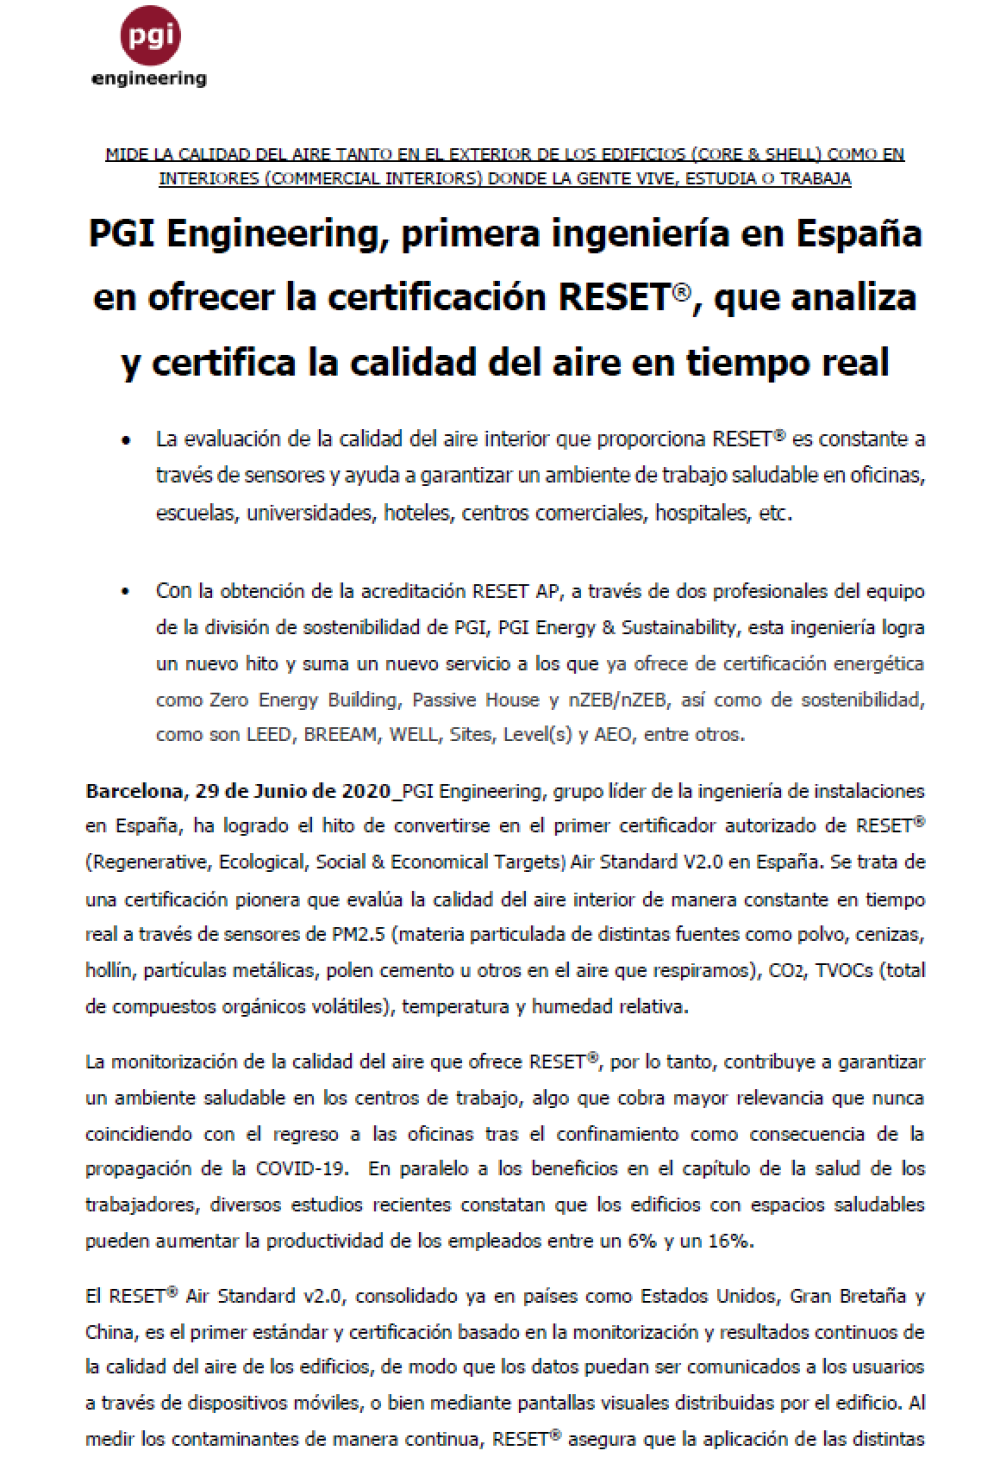 PGI Engineering, primera enginyeria a Espanya a oferir la certificació RESET®, que analitza i certifica la qualitat de l'aire en temps real